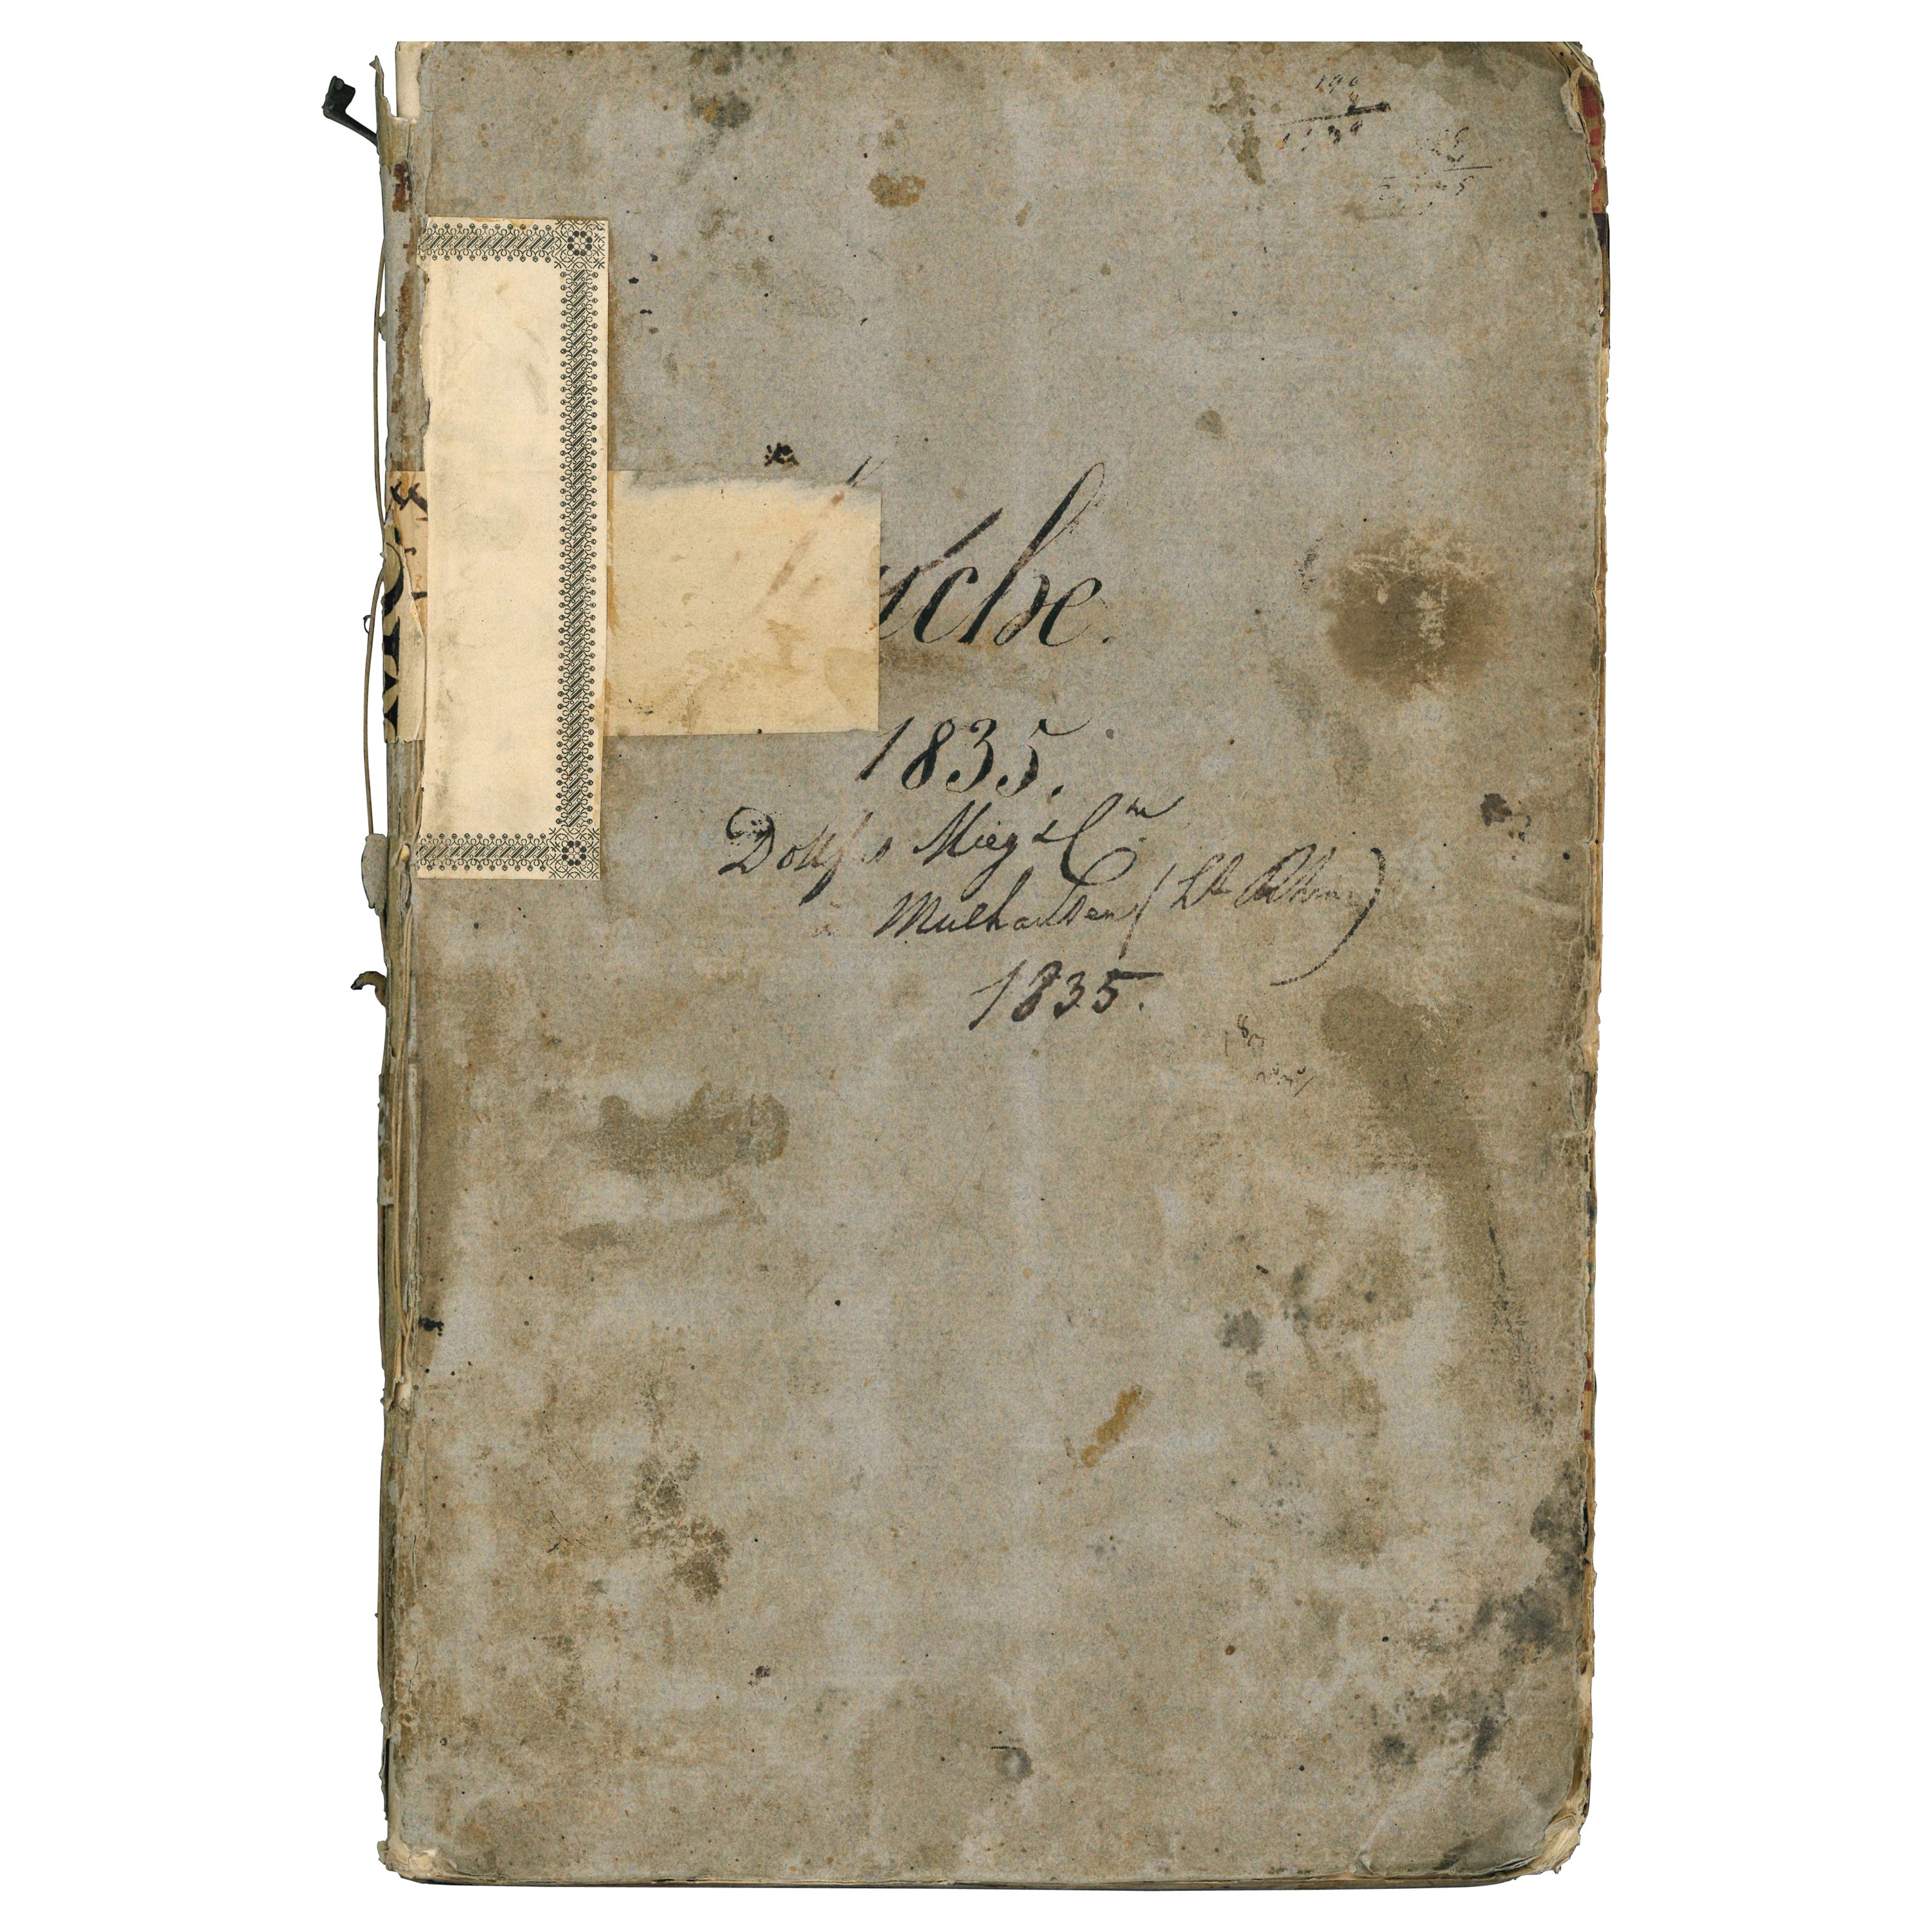 Livre d'échantillons de tissu daté de 1835 de Dollfus Mieg Et Compagnie (livre)